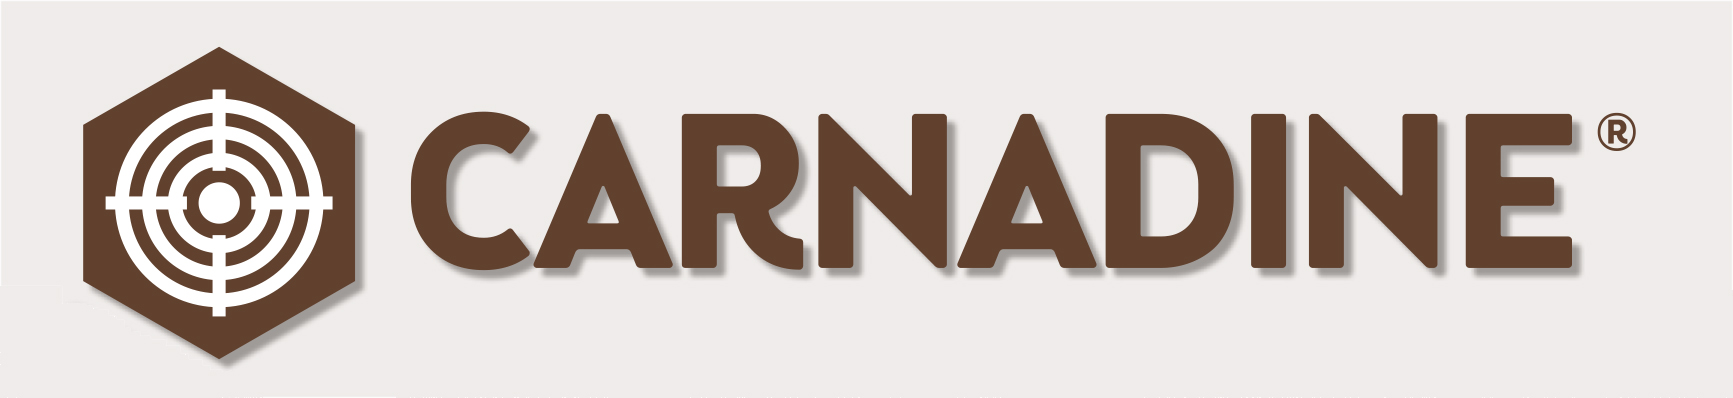 logo carnadine